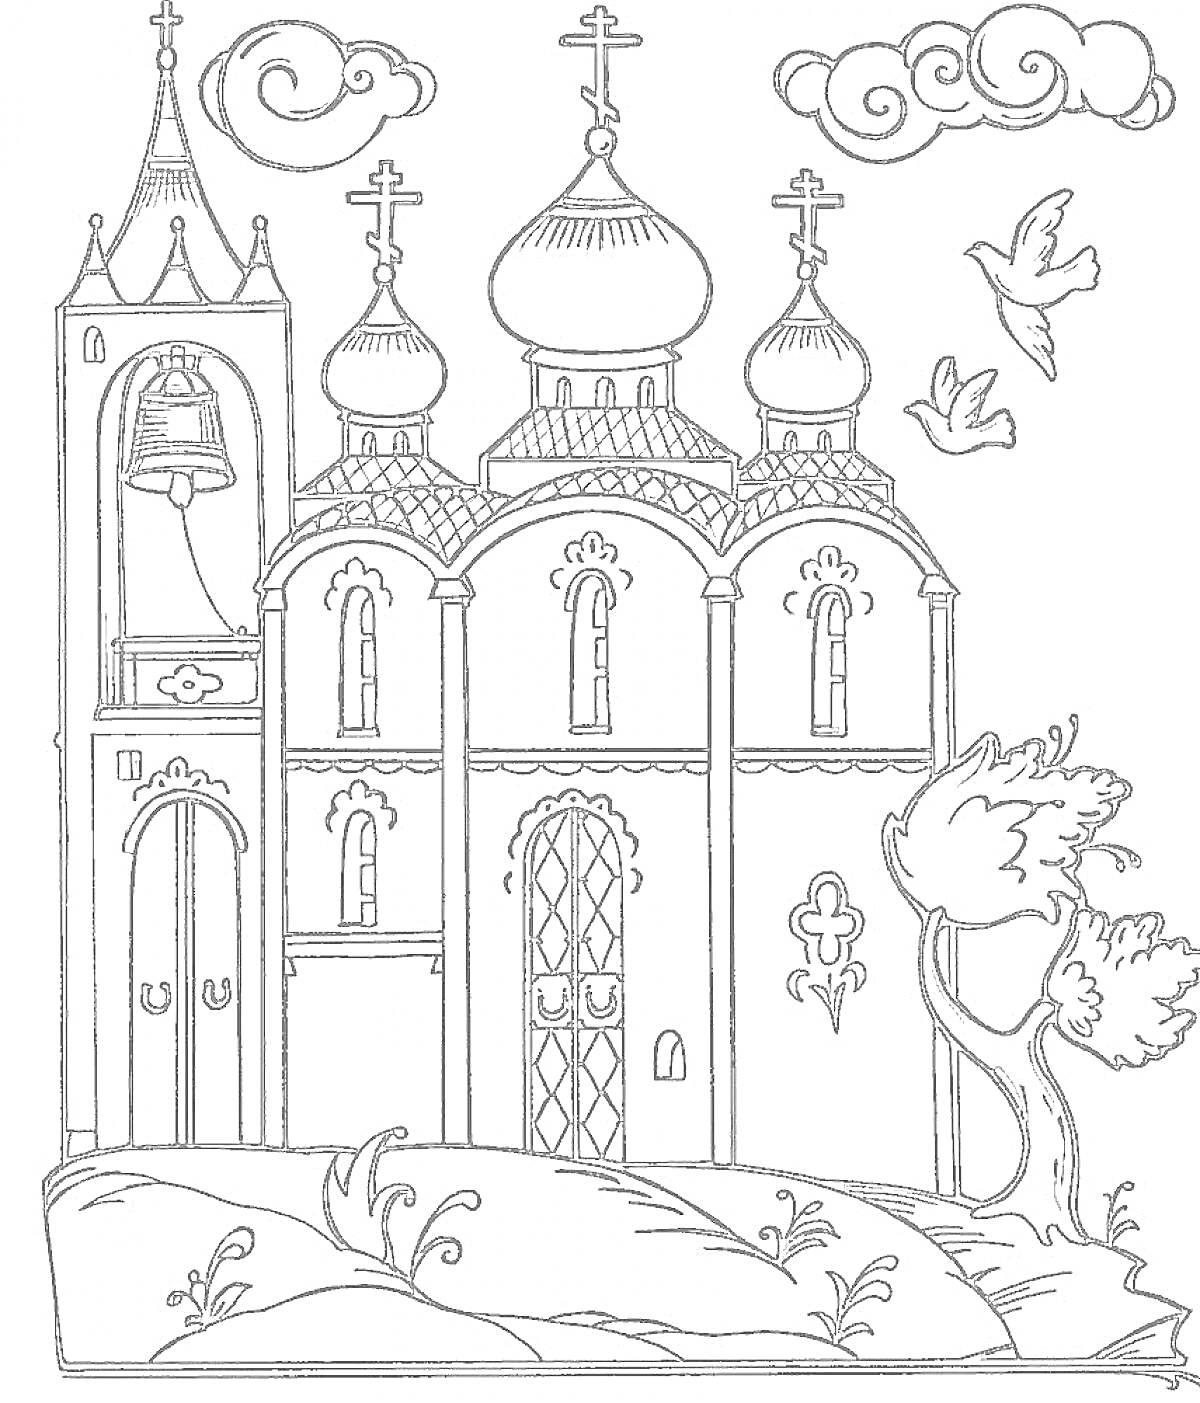 Церковь с колокольней, крестами, куполами, дверьми и окнами, облака, птицы, дерево, кусты и трава